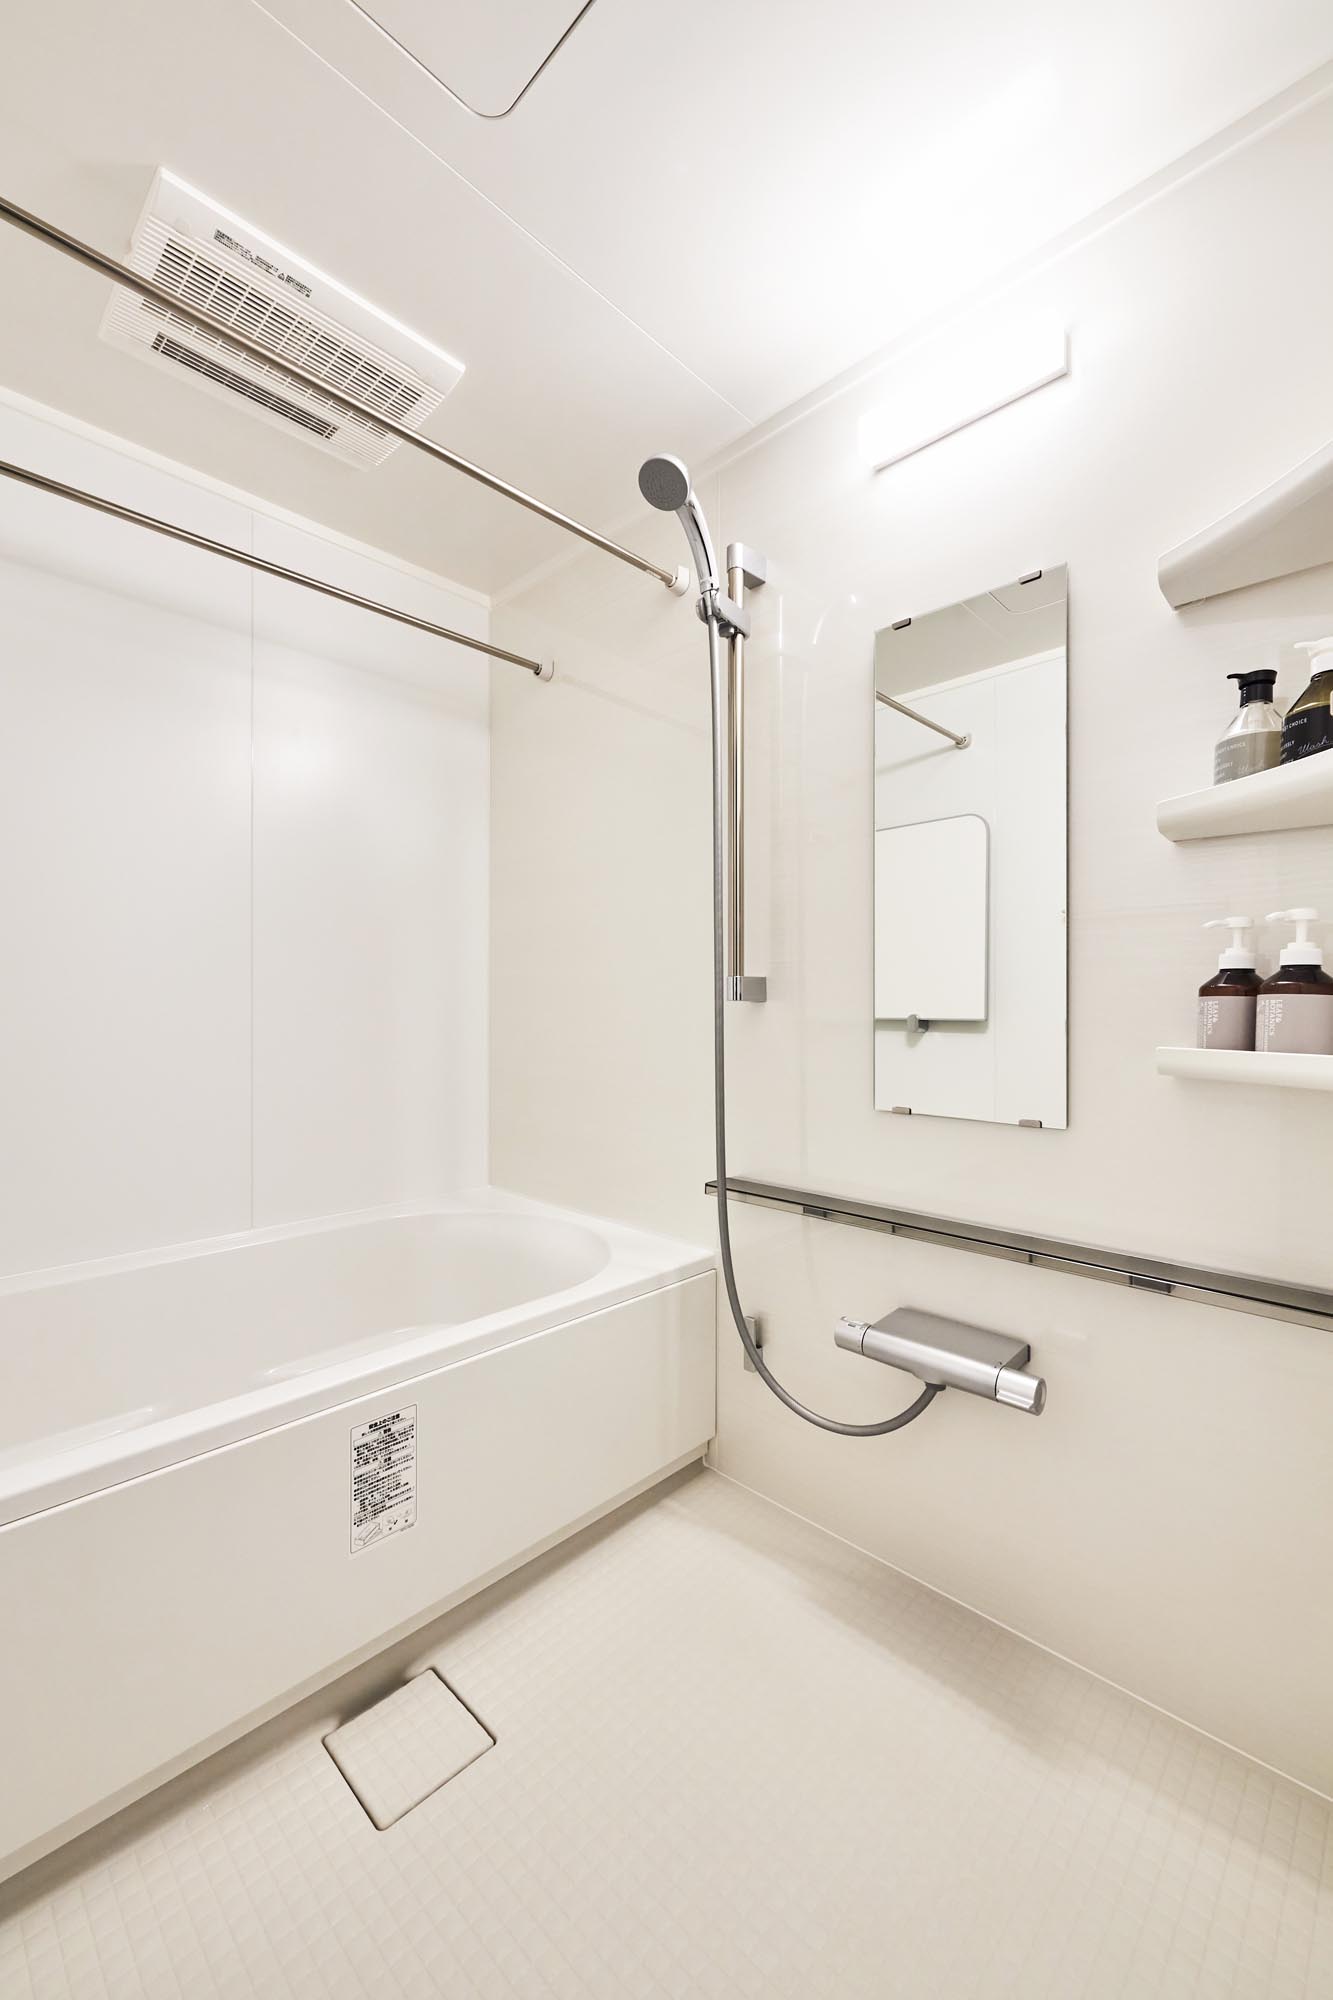 リクシル リノビオV（シャインウッドホワイト）でホワイトカラーでまとめた浴室リフォーム